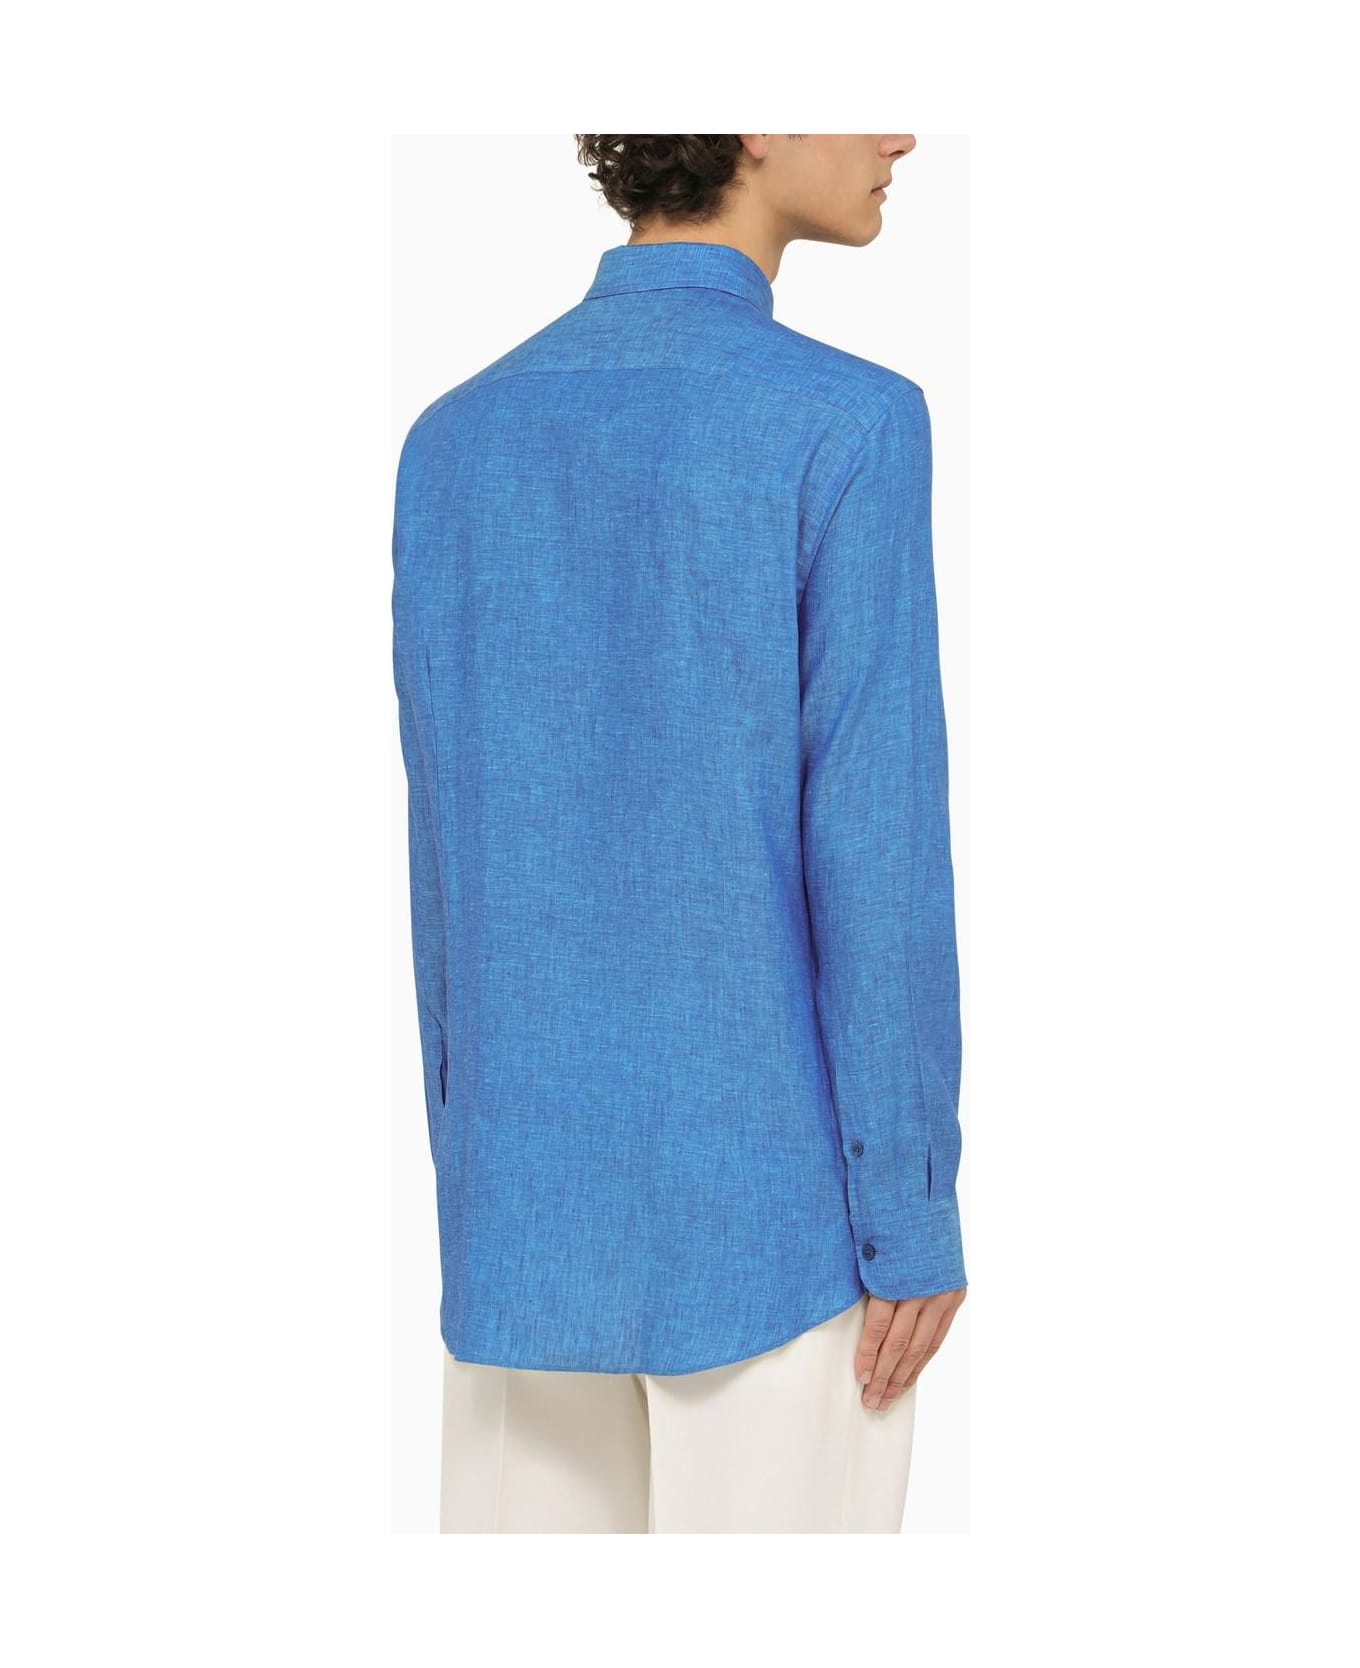 Etro Light Blue Linen Shirt - Blue